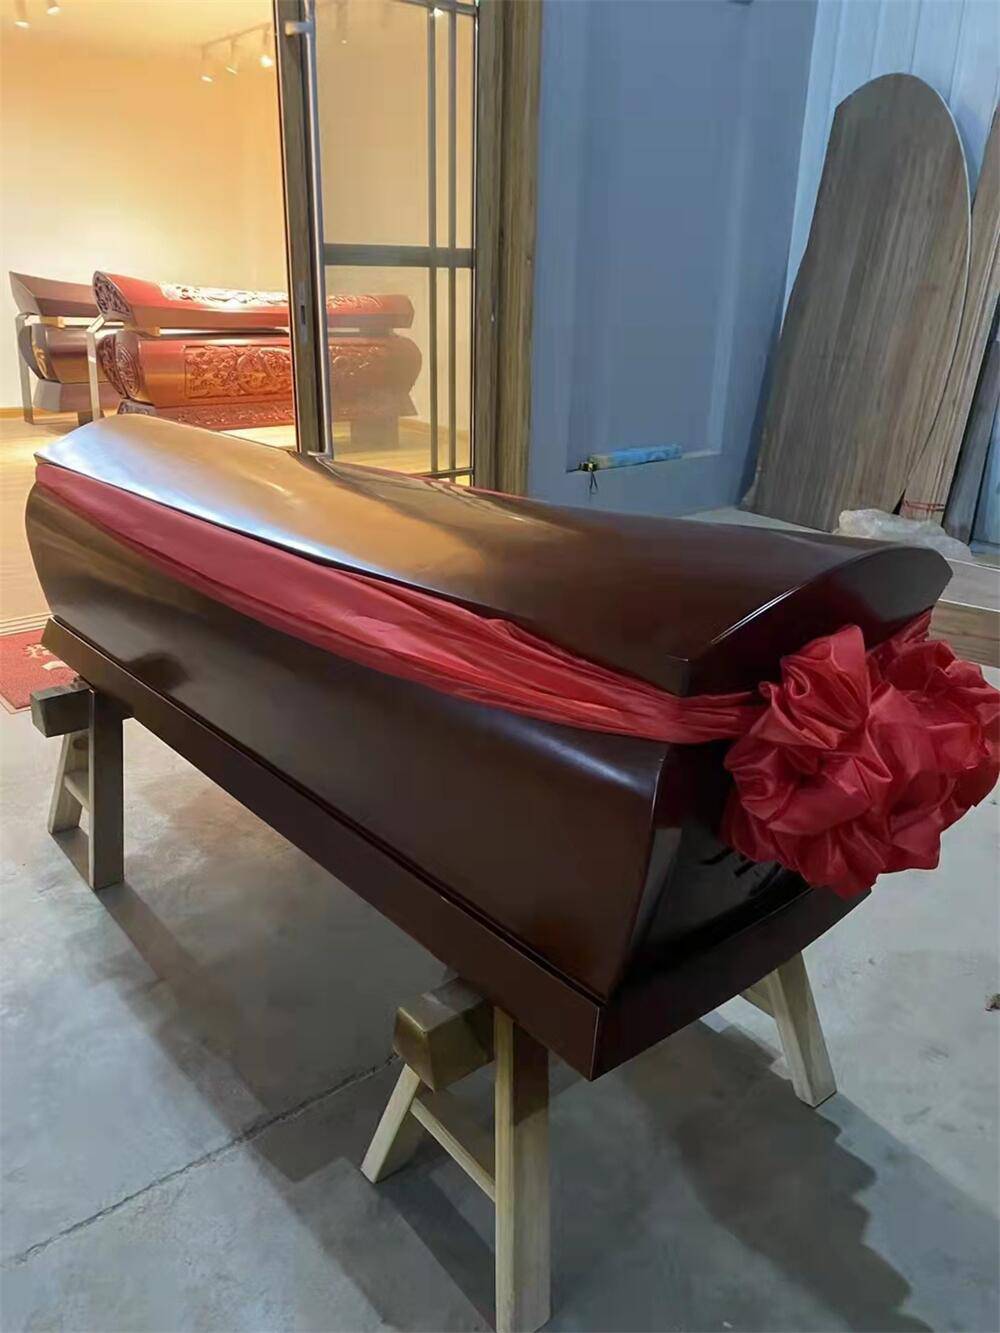 土葬棺材红木龙凤浮雕棺材 小棺材寿材 千年屋棺材加盟咨询